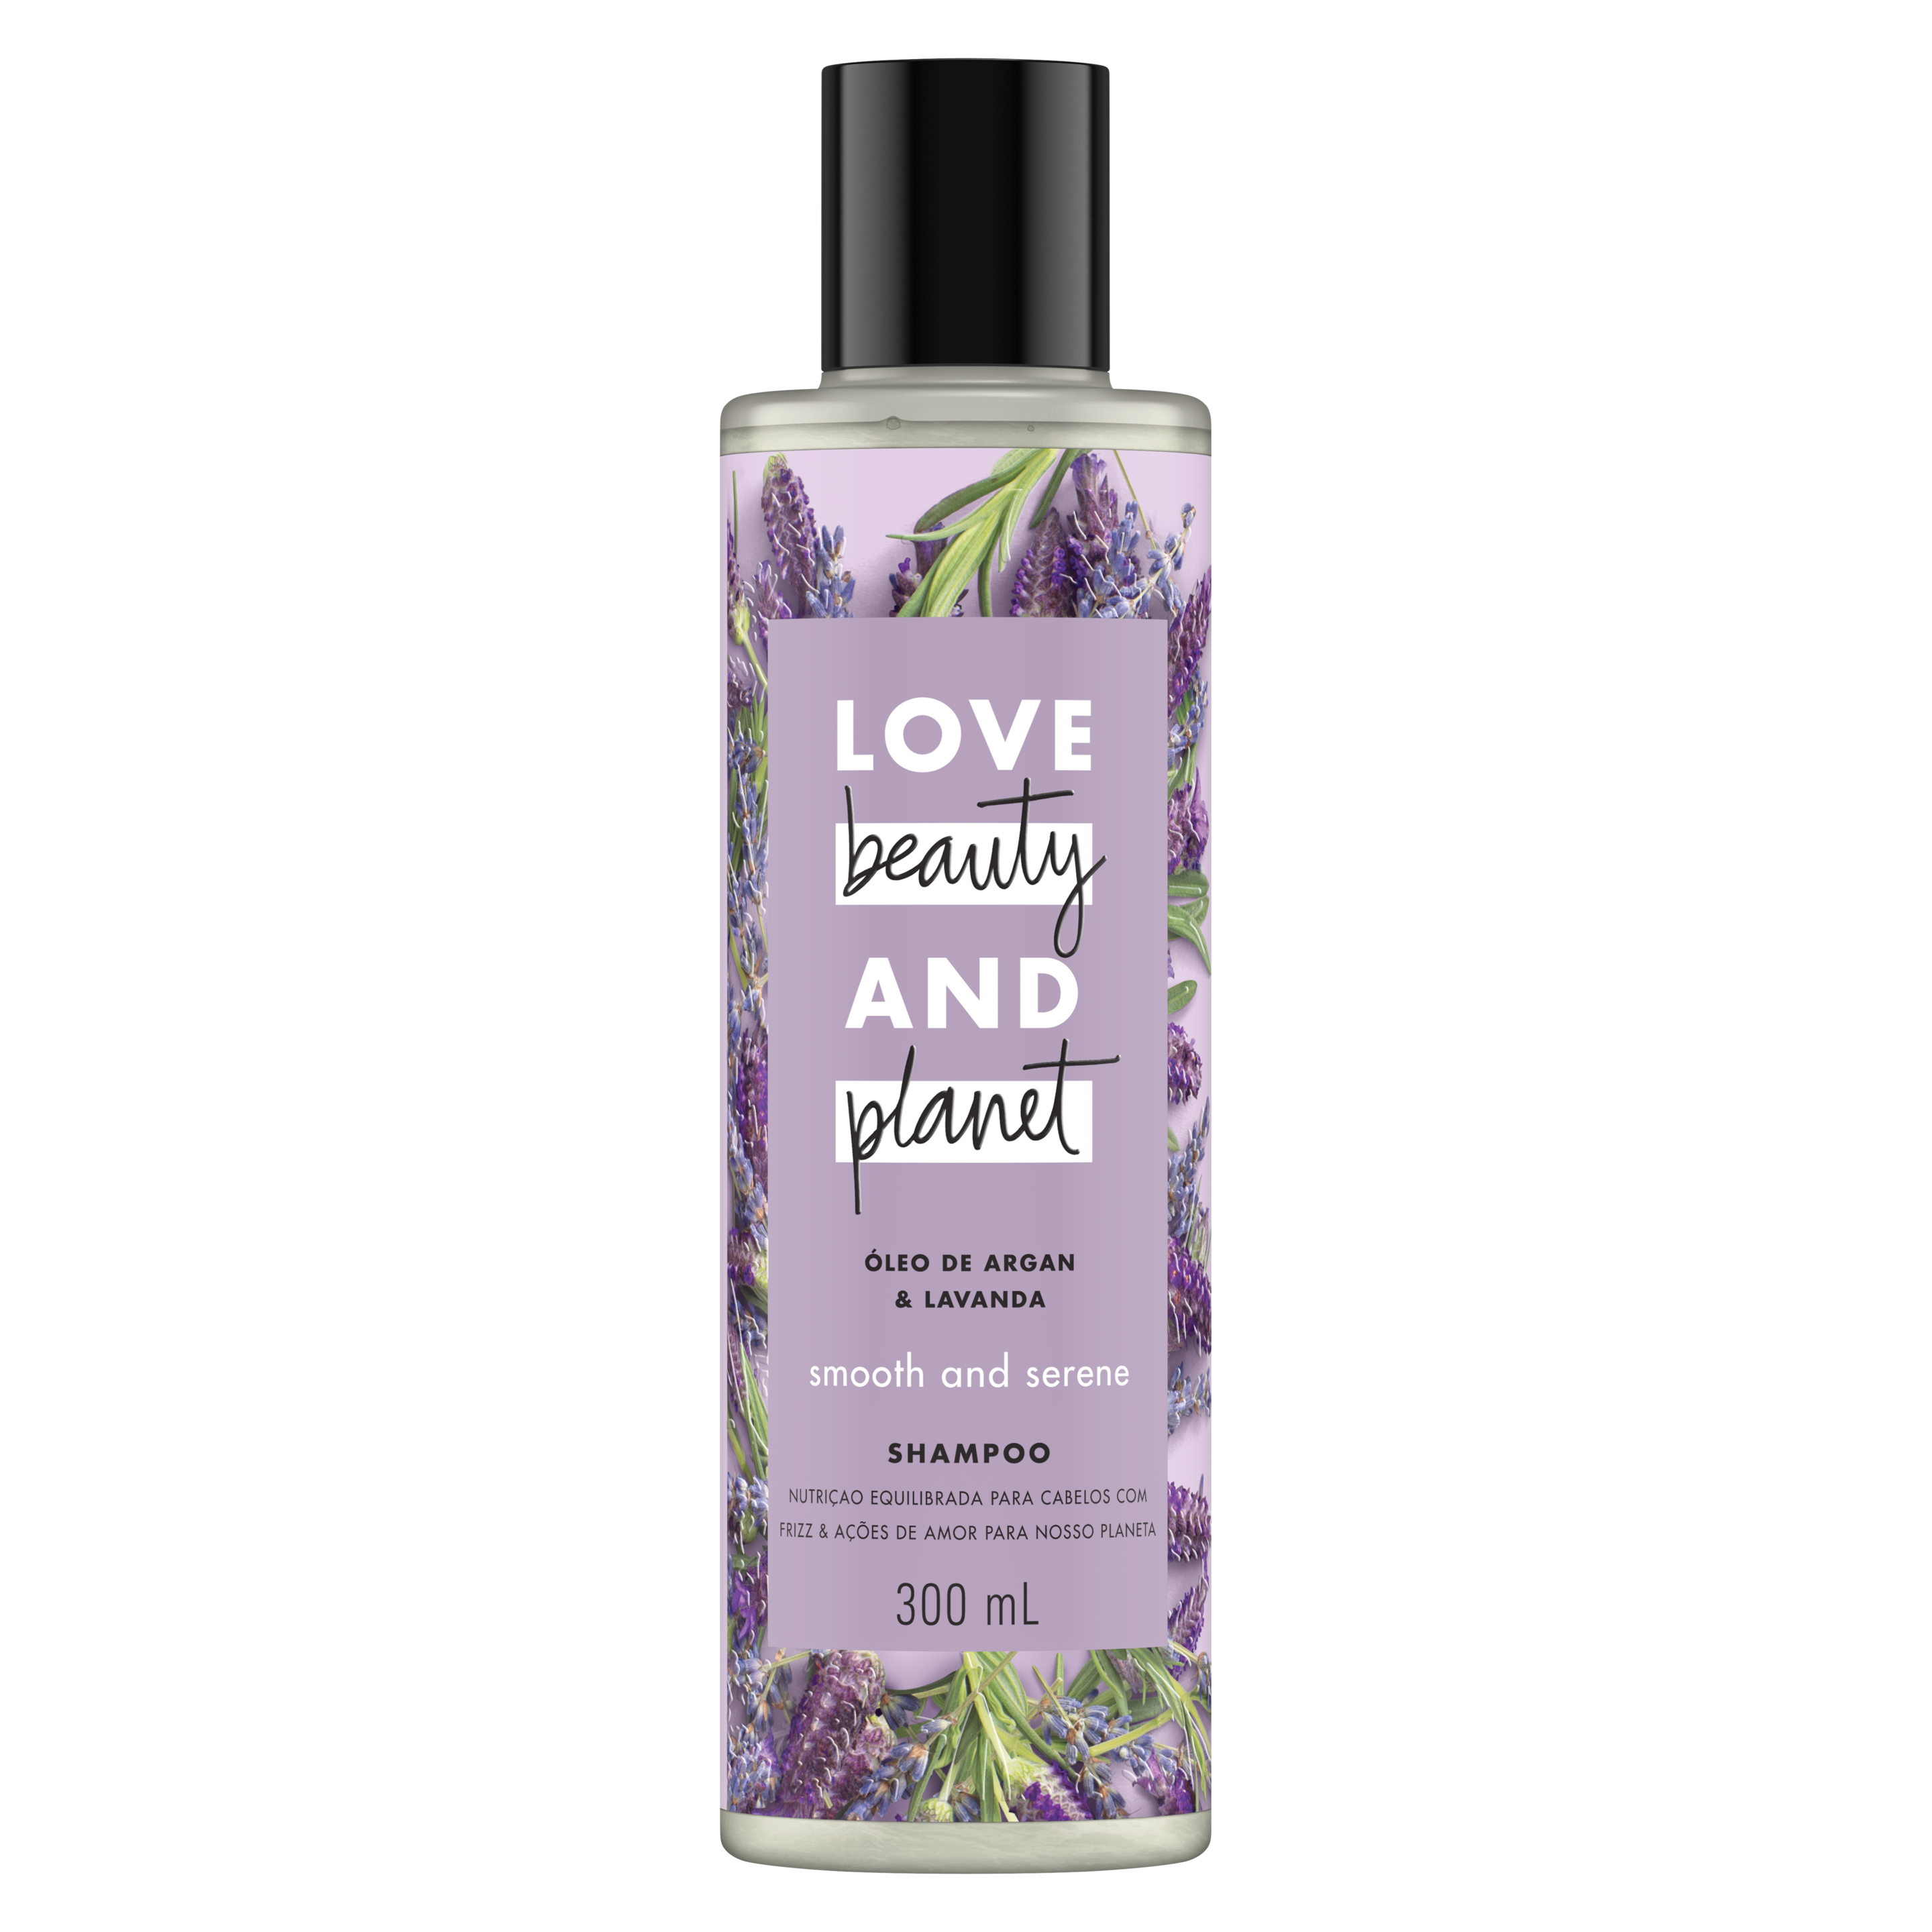 Frente da embalagem do shampoo Love Beauty and Planet óleo de argan & lavanda 300 ml